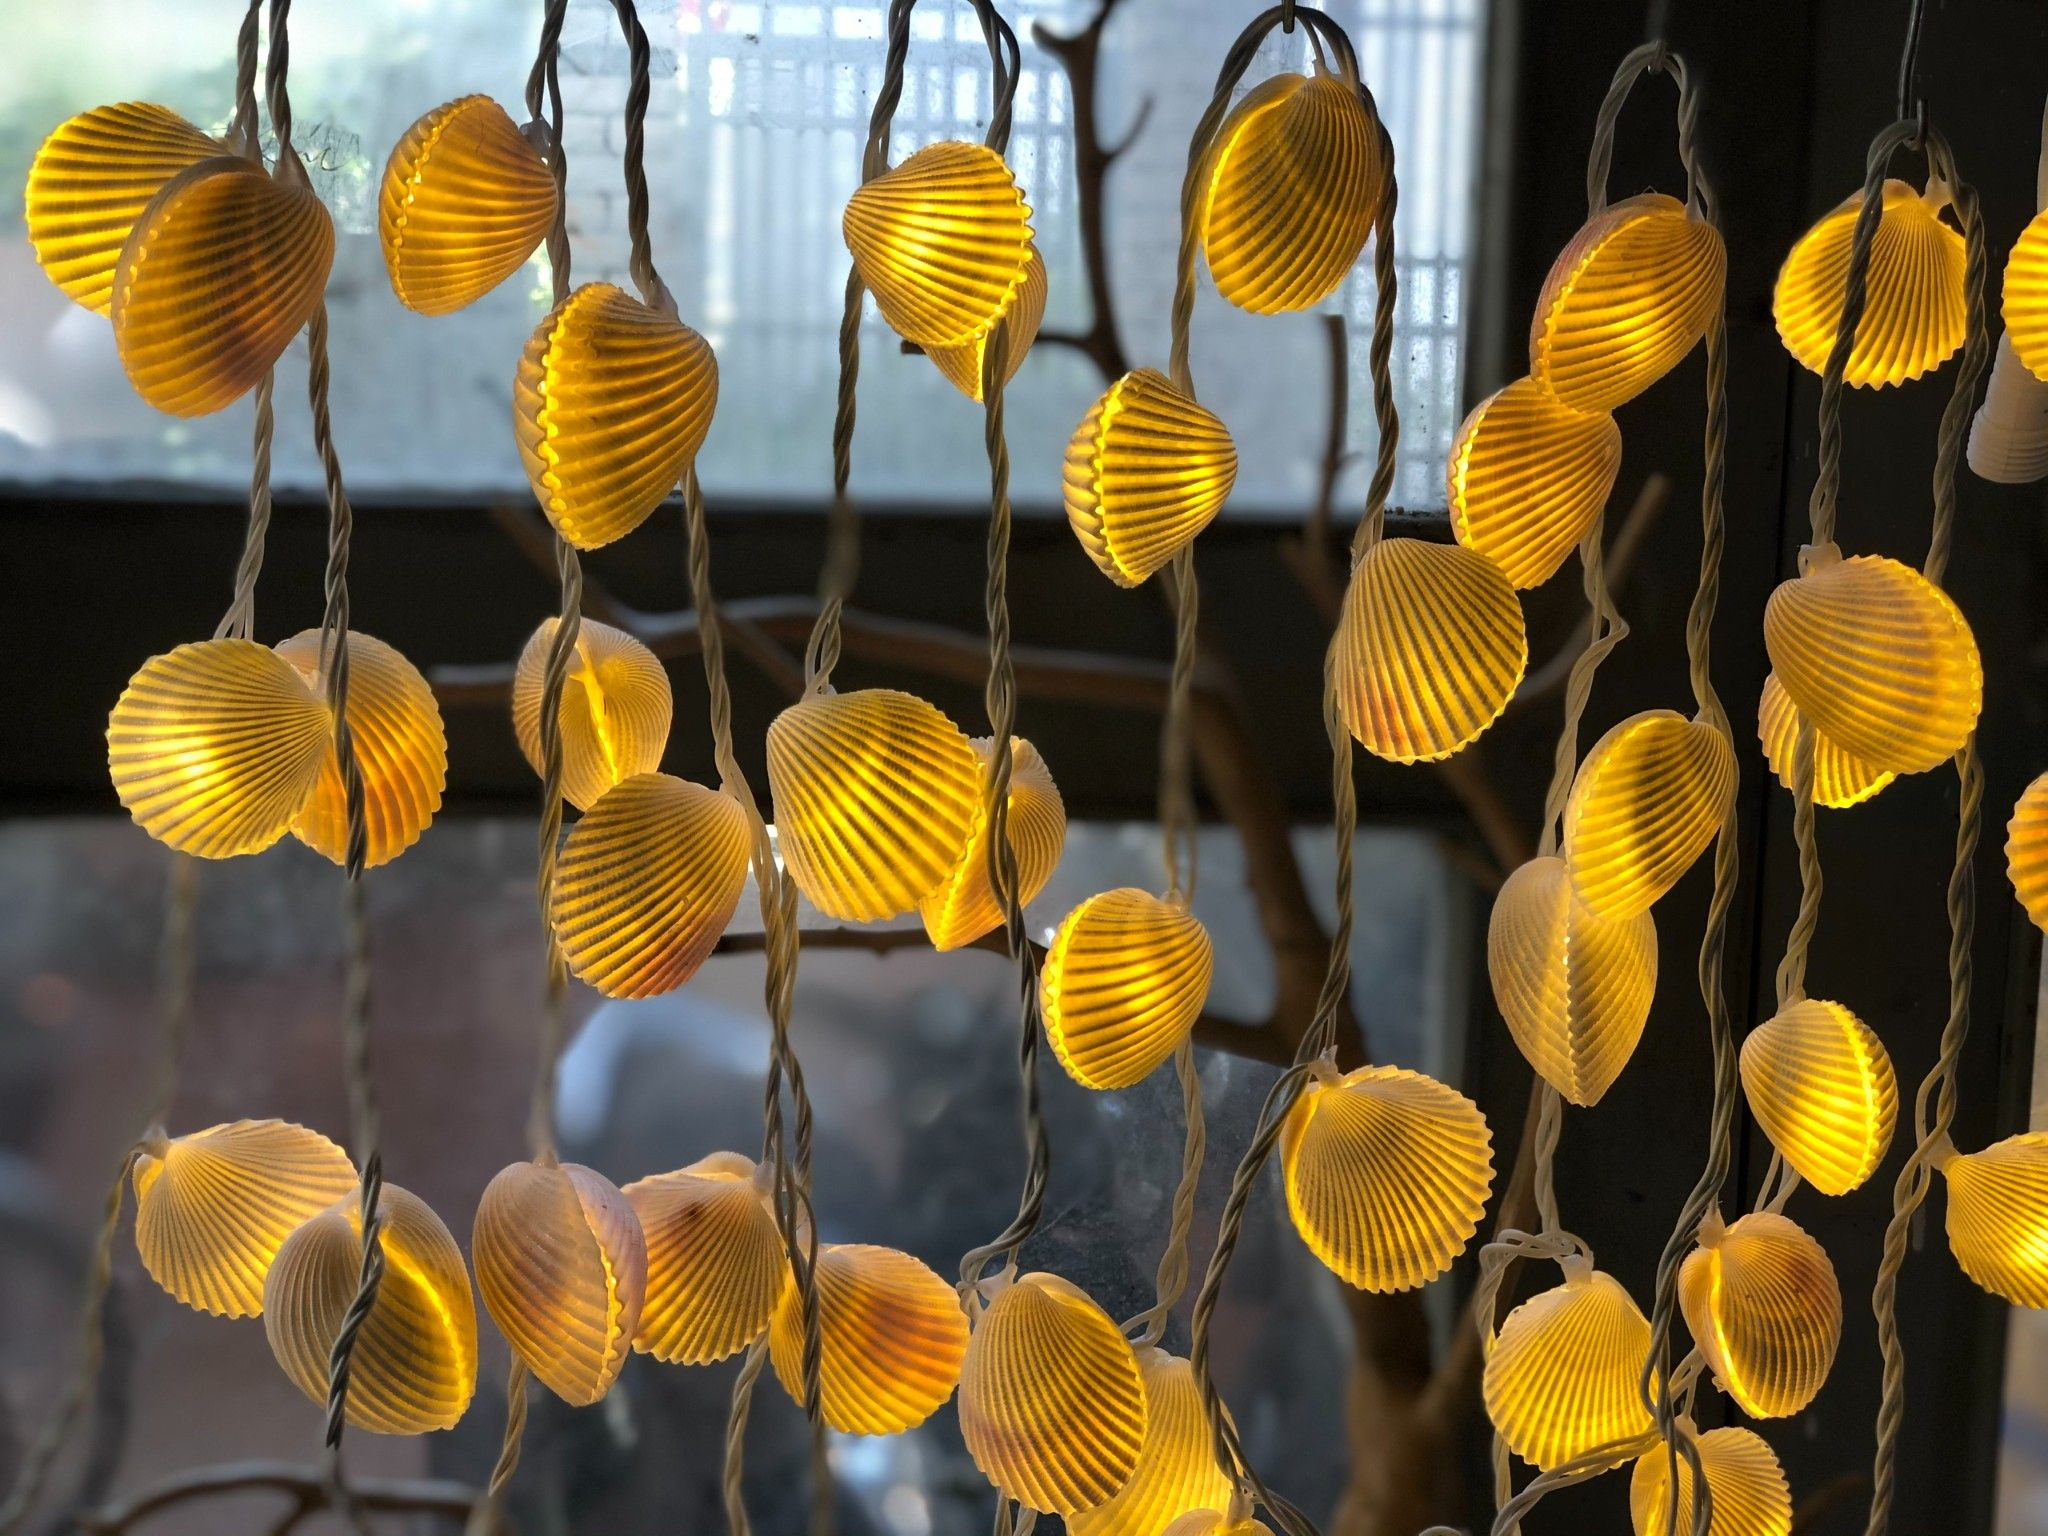  Đèn LED dây nghệ thuật Vỏ Ốc Sò Dương 